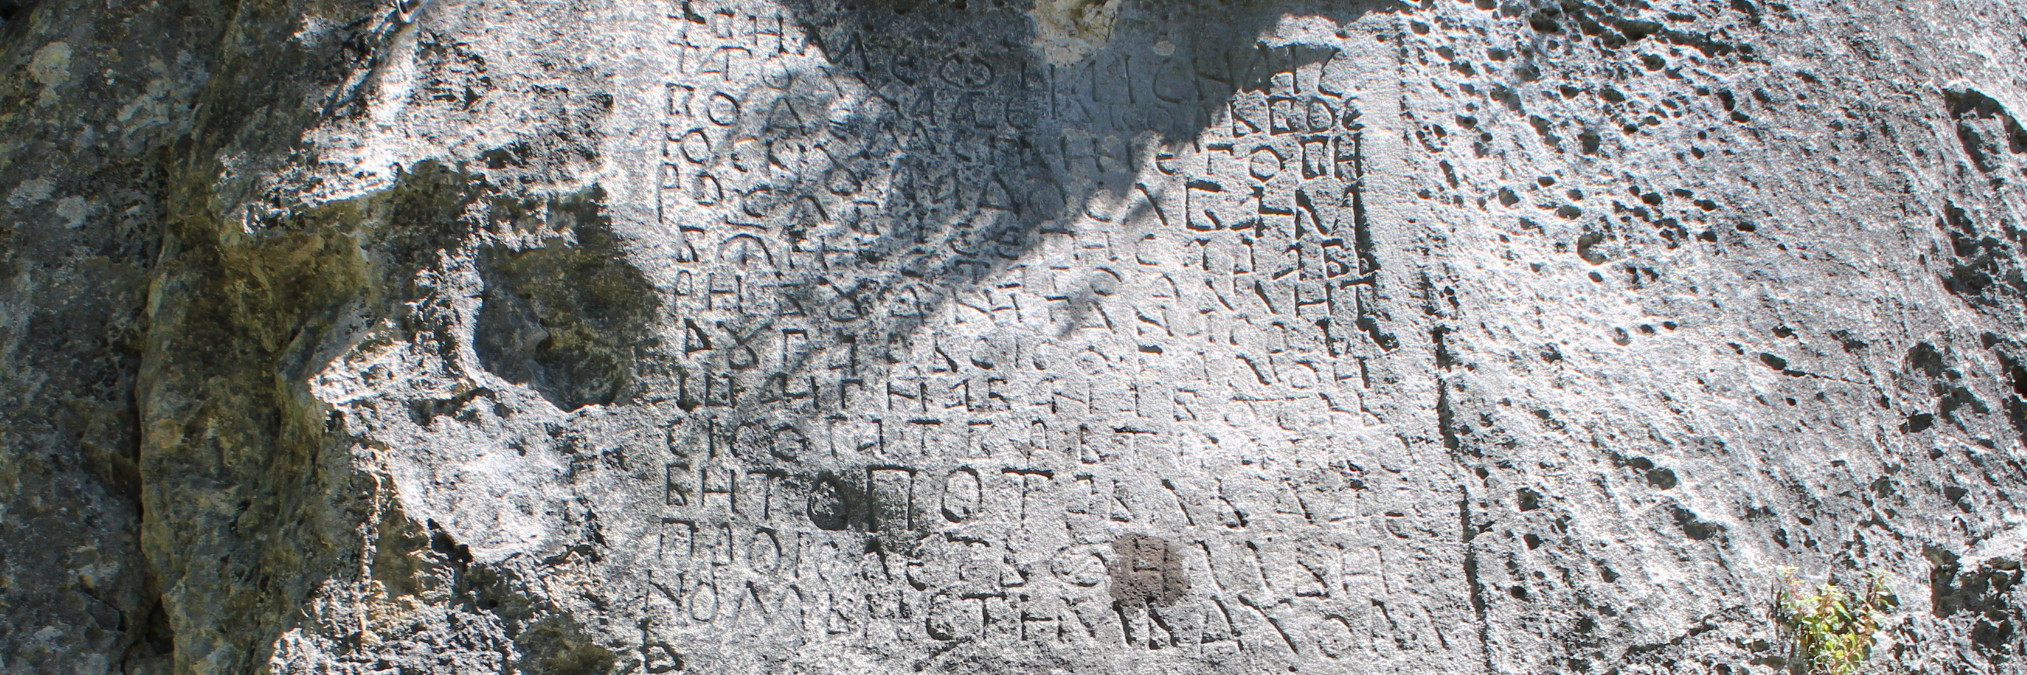 Средневековая надпись в Дрежнице. Фото: Елена Арсениевич, CC BY-SA 3.0